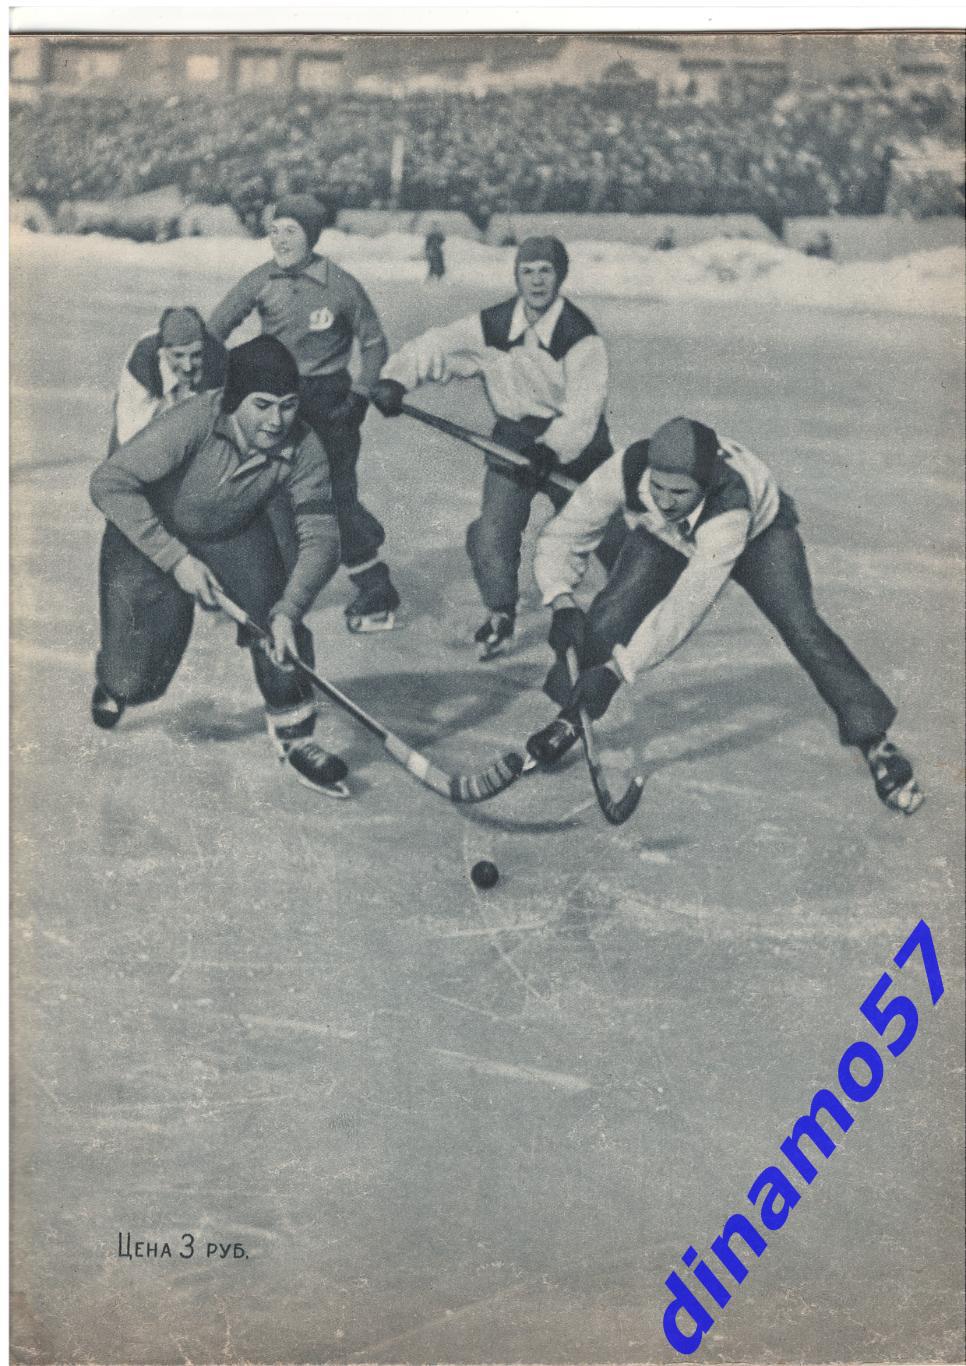 Журнал Спортивные игры№ 7 1955 1